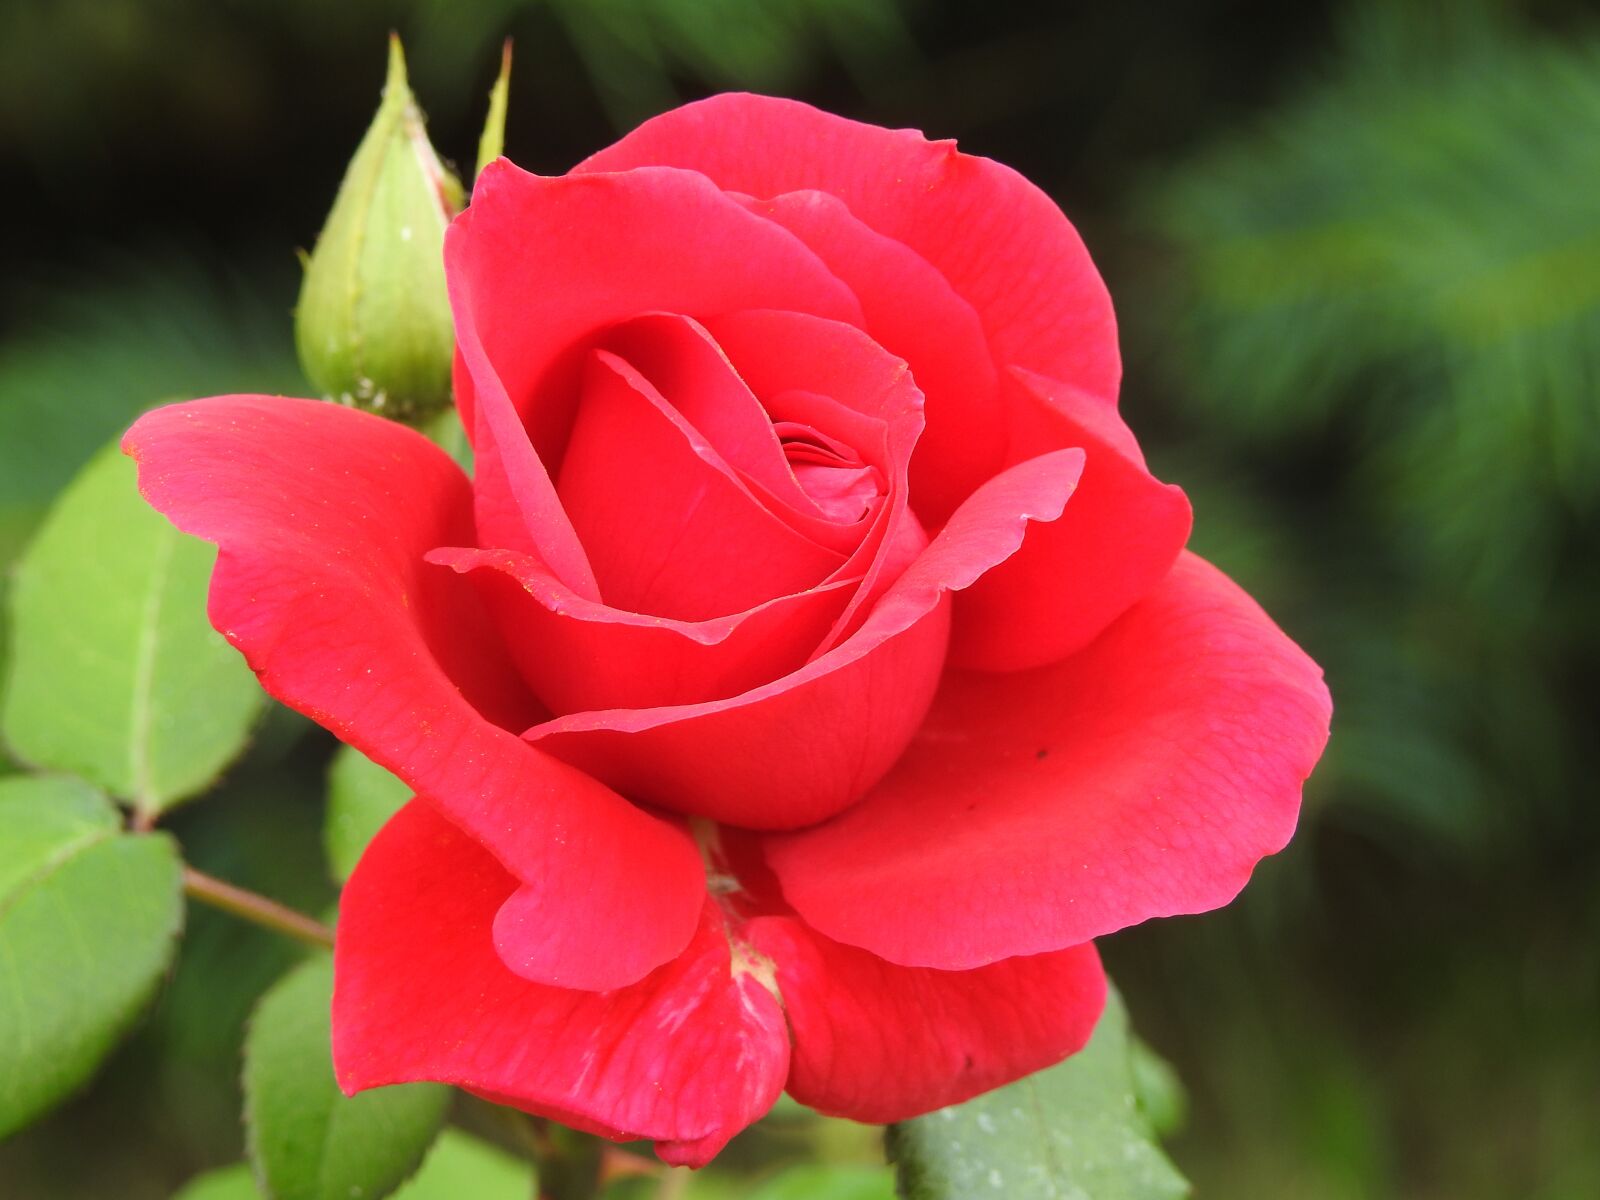 Nikon Coolpix P900 sample photo. Rose, red rose, rose photography